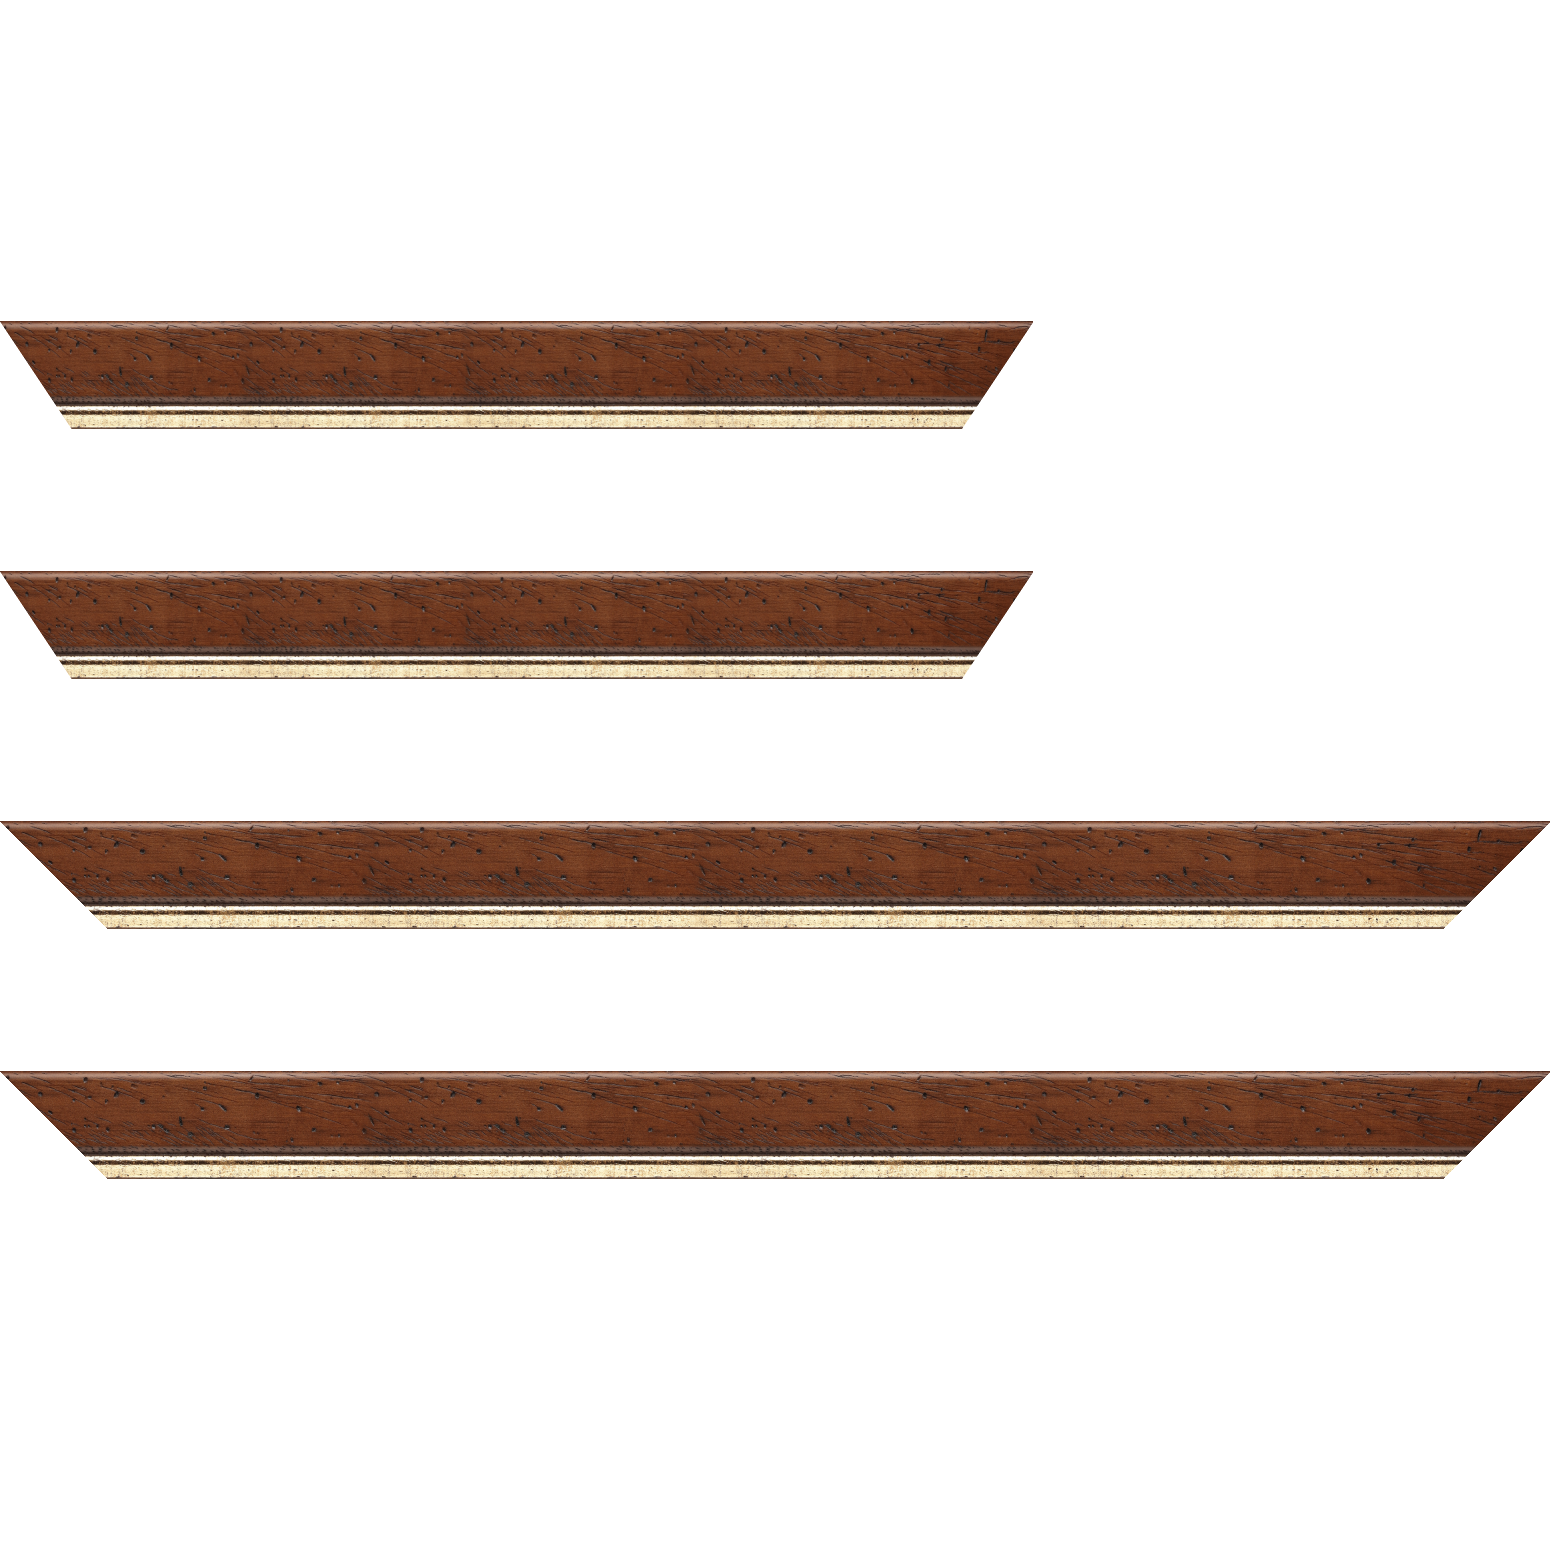 Baguette bois profil arrondi largeur 3.5cm marron satiné classique filet or - 70x100